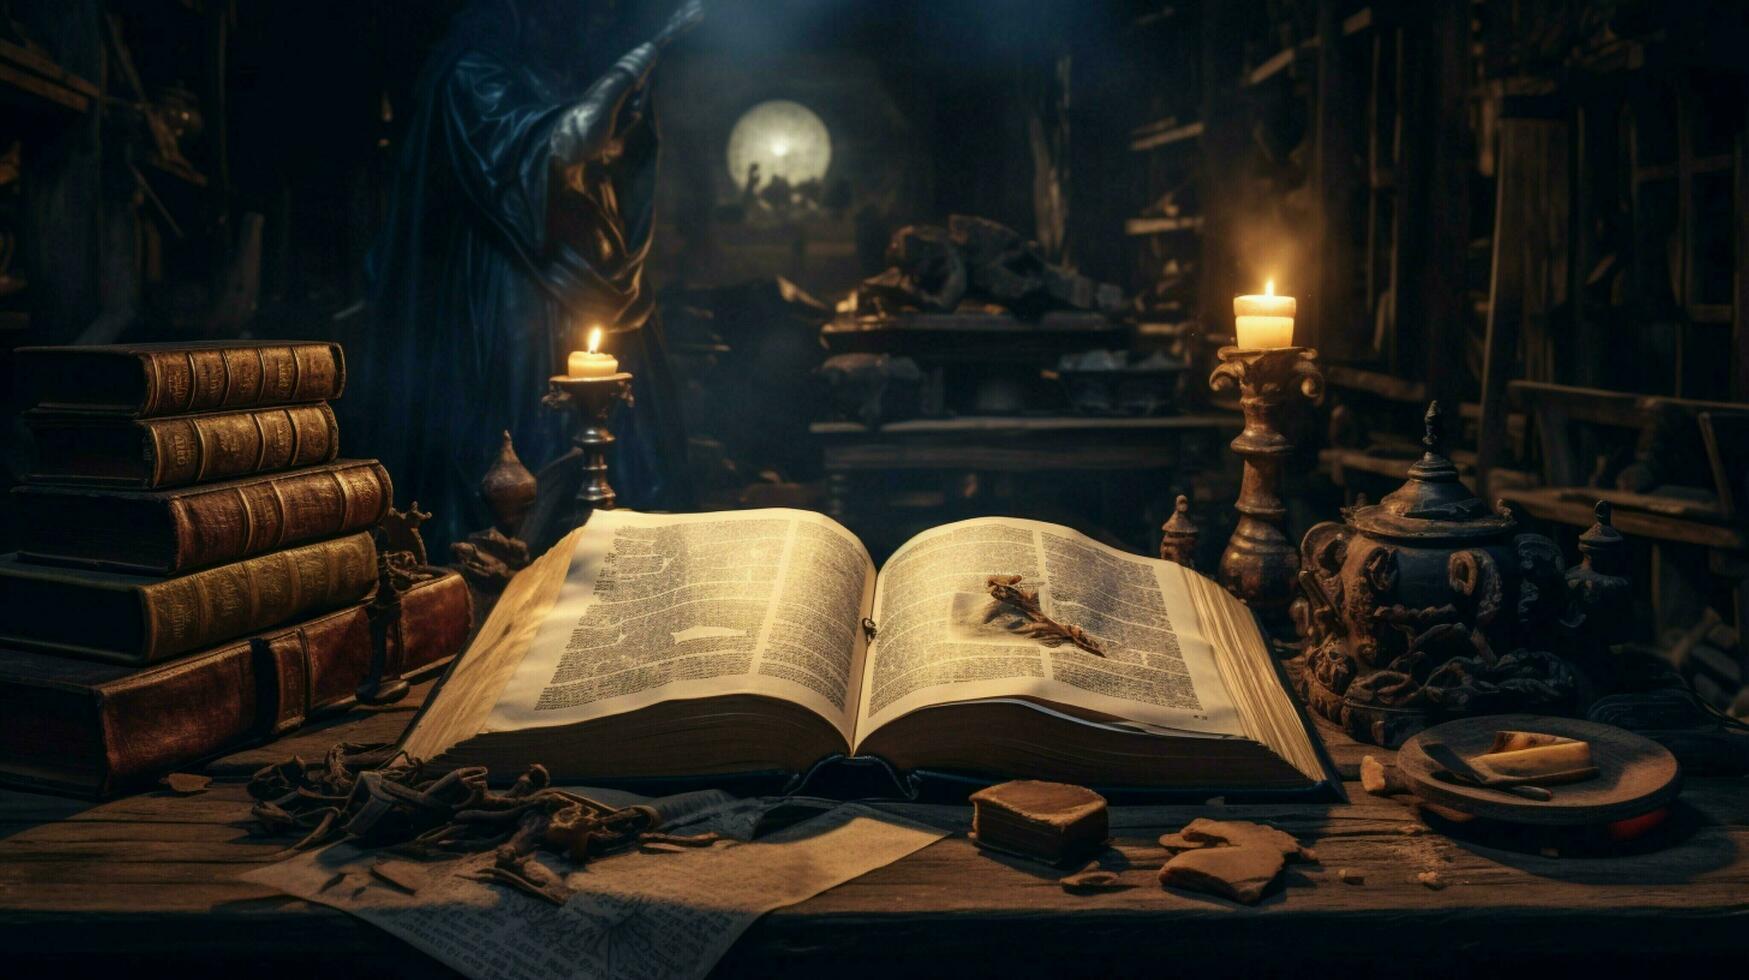 ancient bible illuminates dark library with wisdom photo